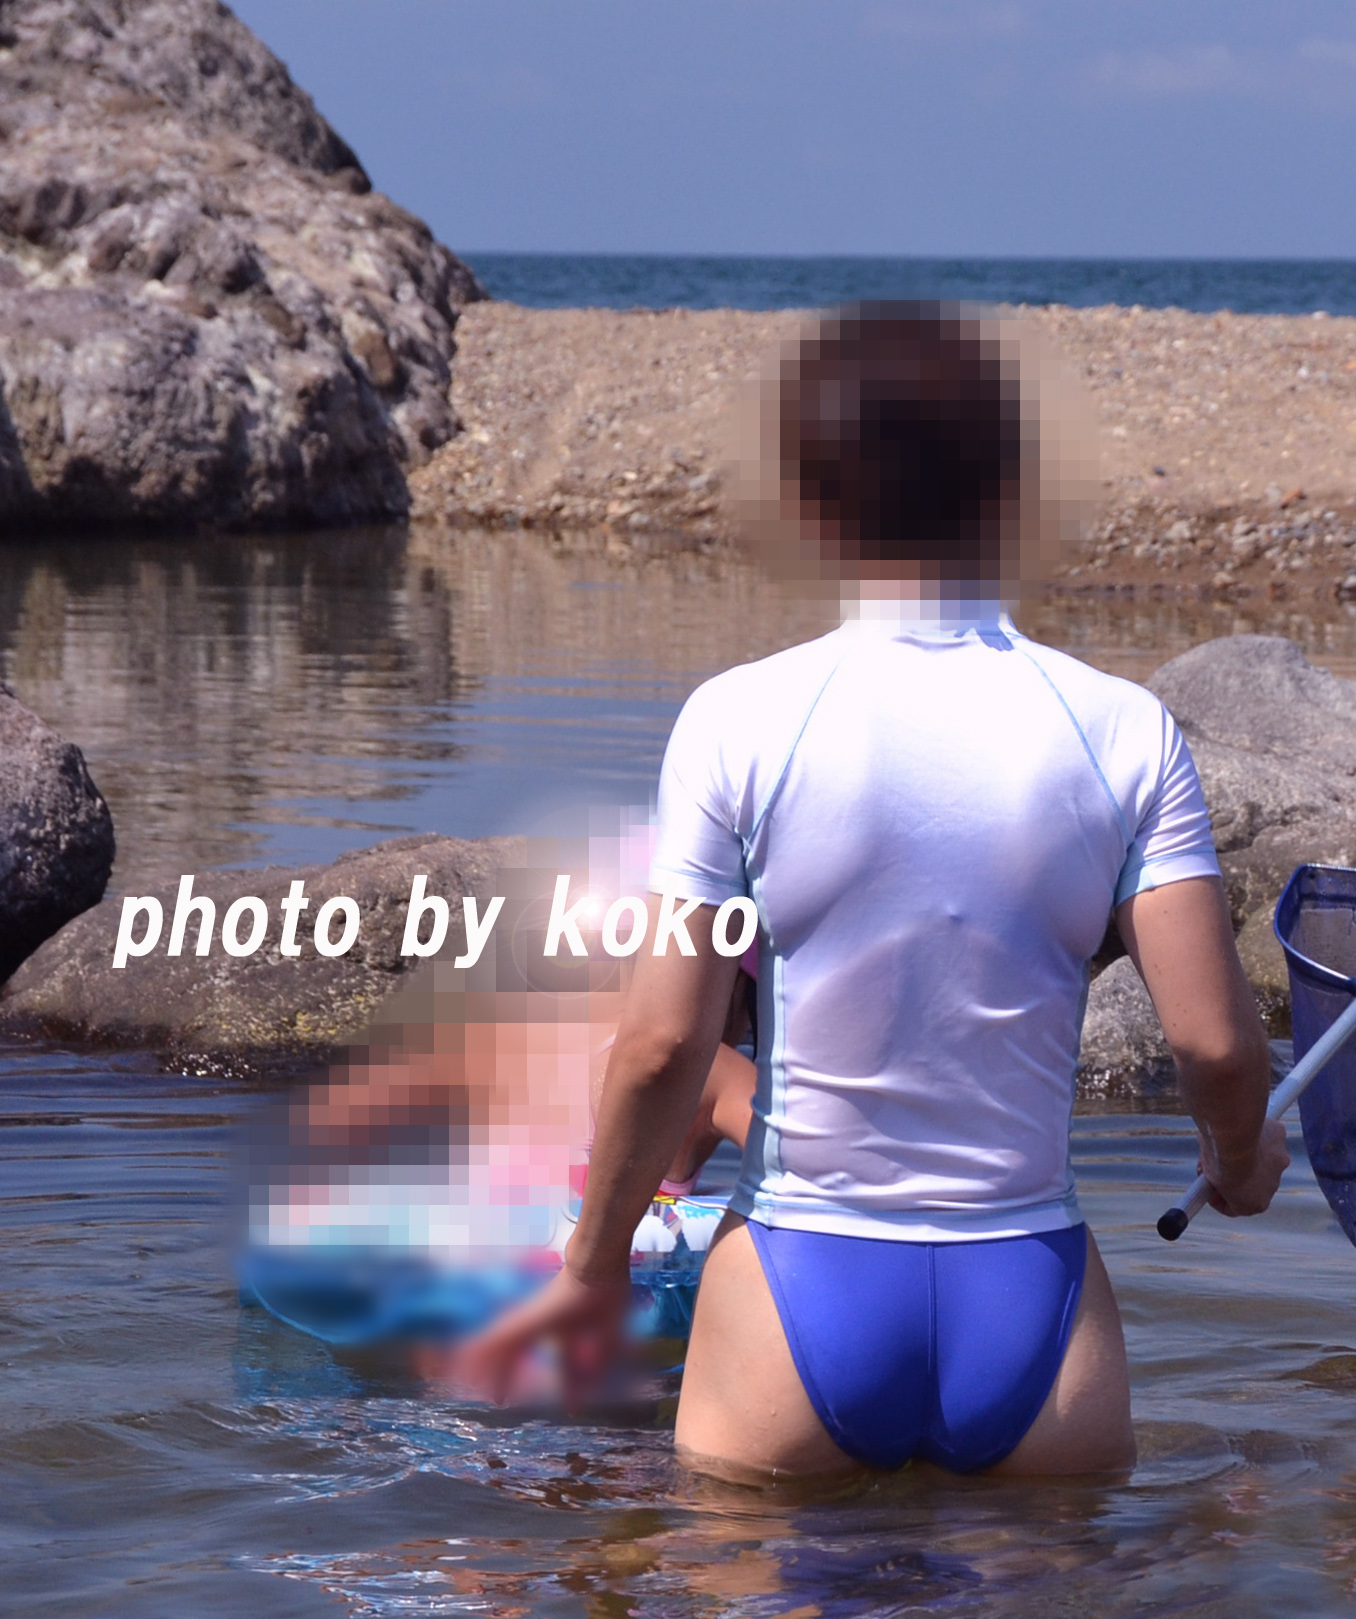 屋外 競泳水着画像掲示板へ投稿されたkoko様の屋外 競泳水着画像 No.15934776460001